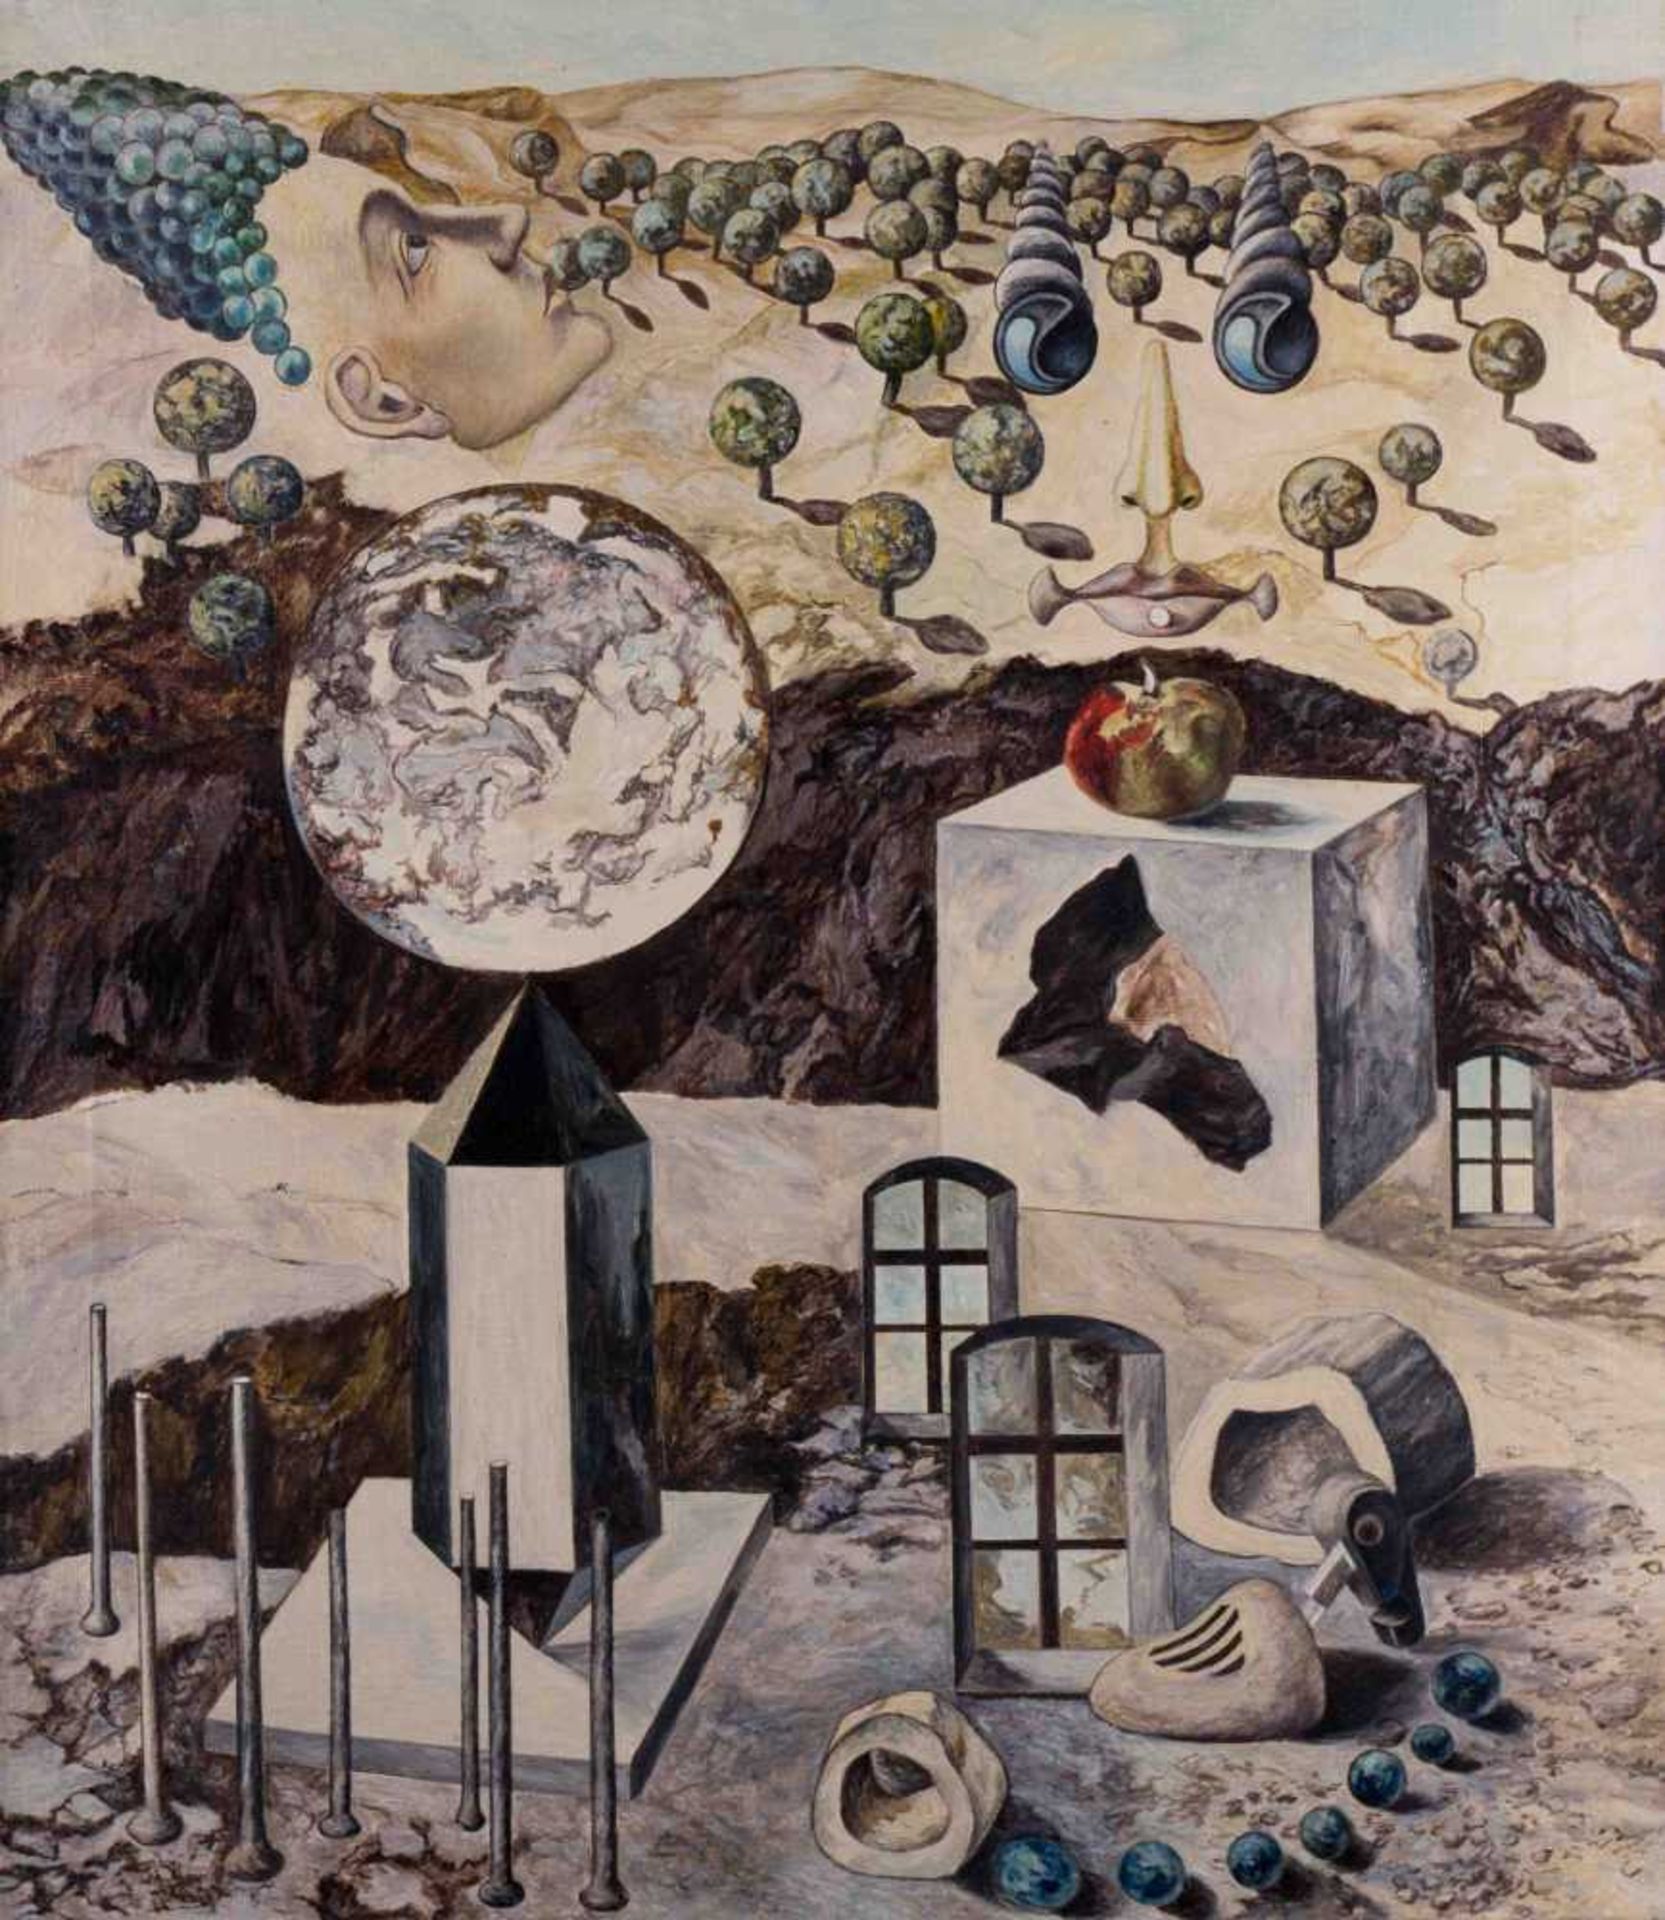 Samuel BAK (1933)(Attrib.) "Surealistische Landschaft mit Apfel" Gemälde Öl/Leinwand, 75,3 cm x 65,3